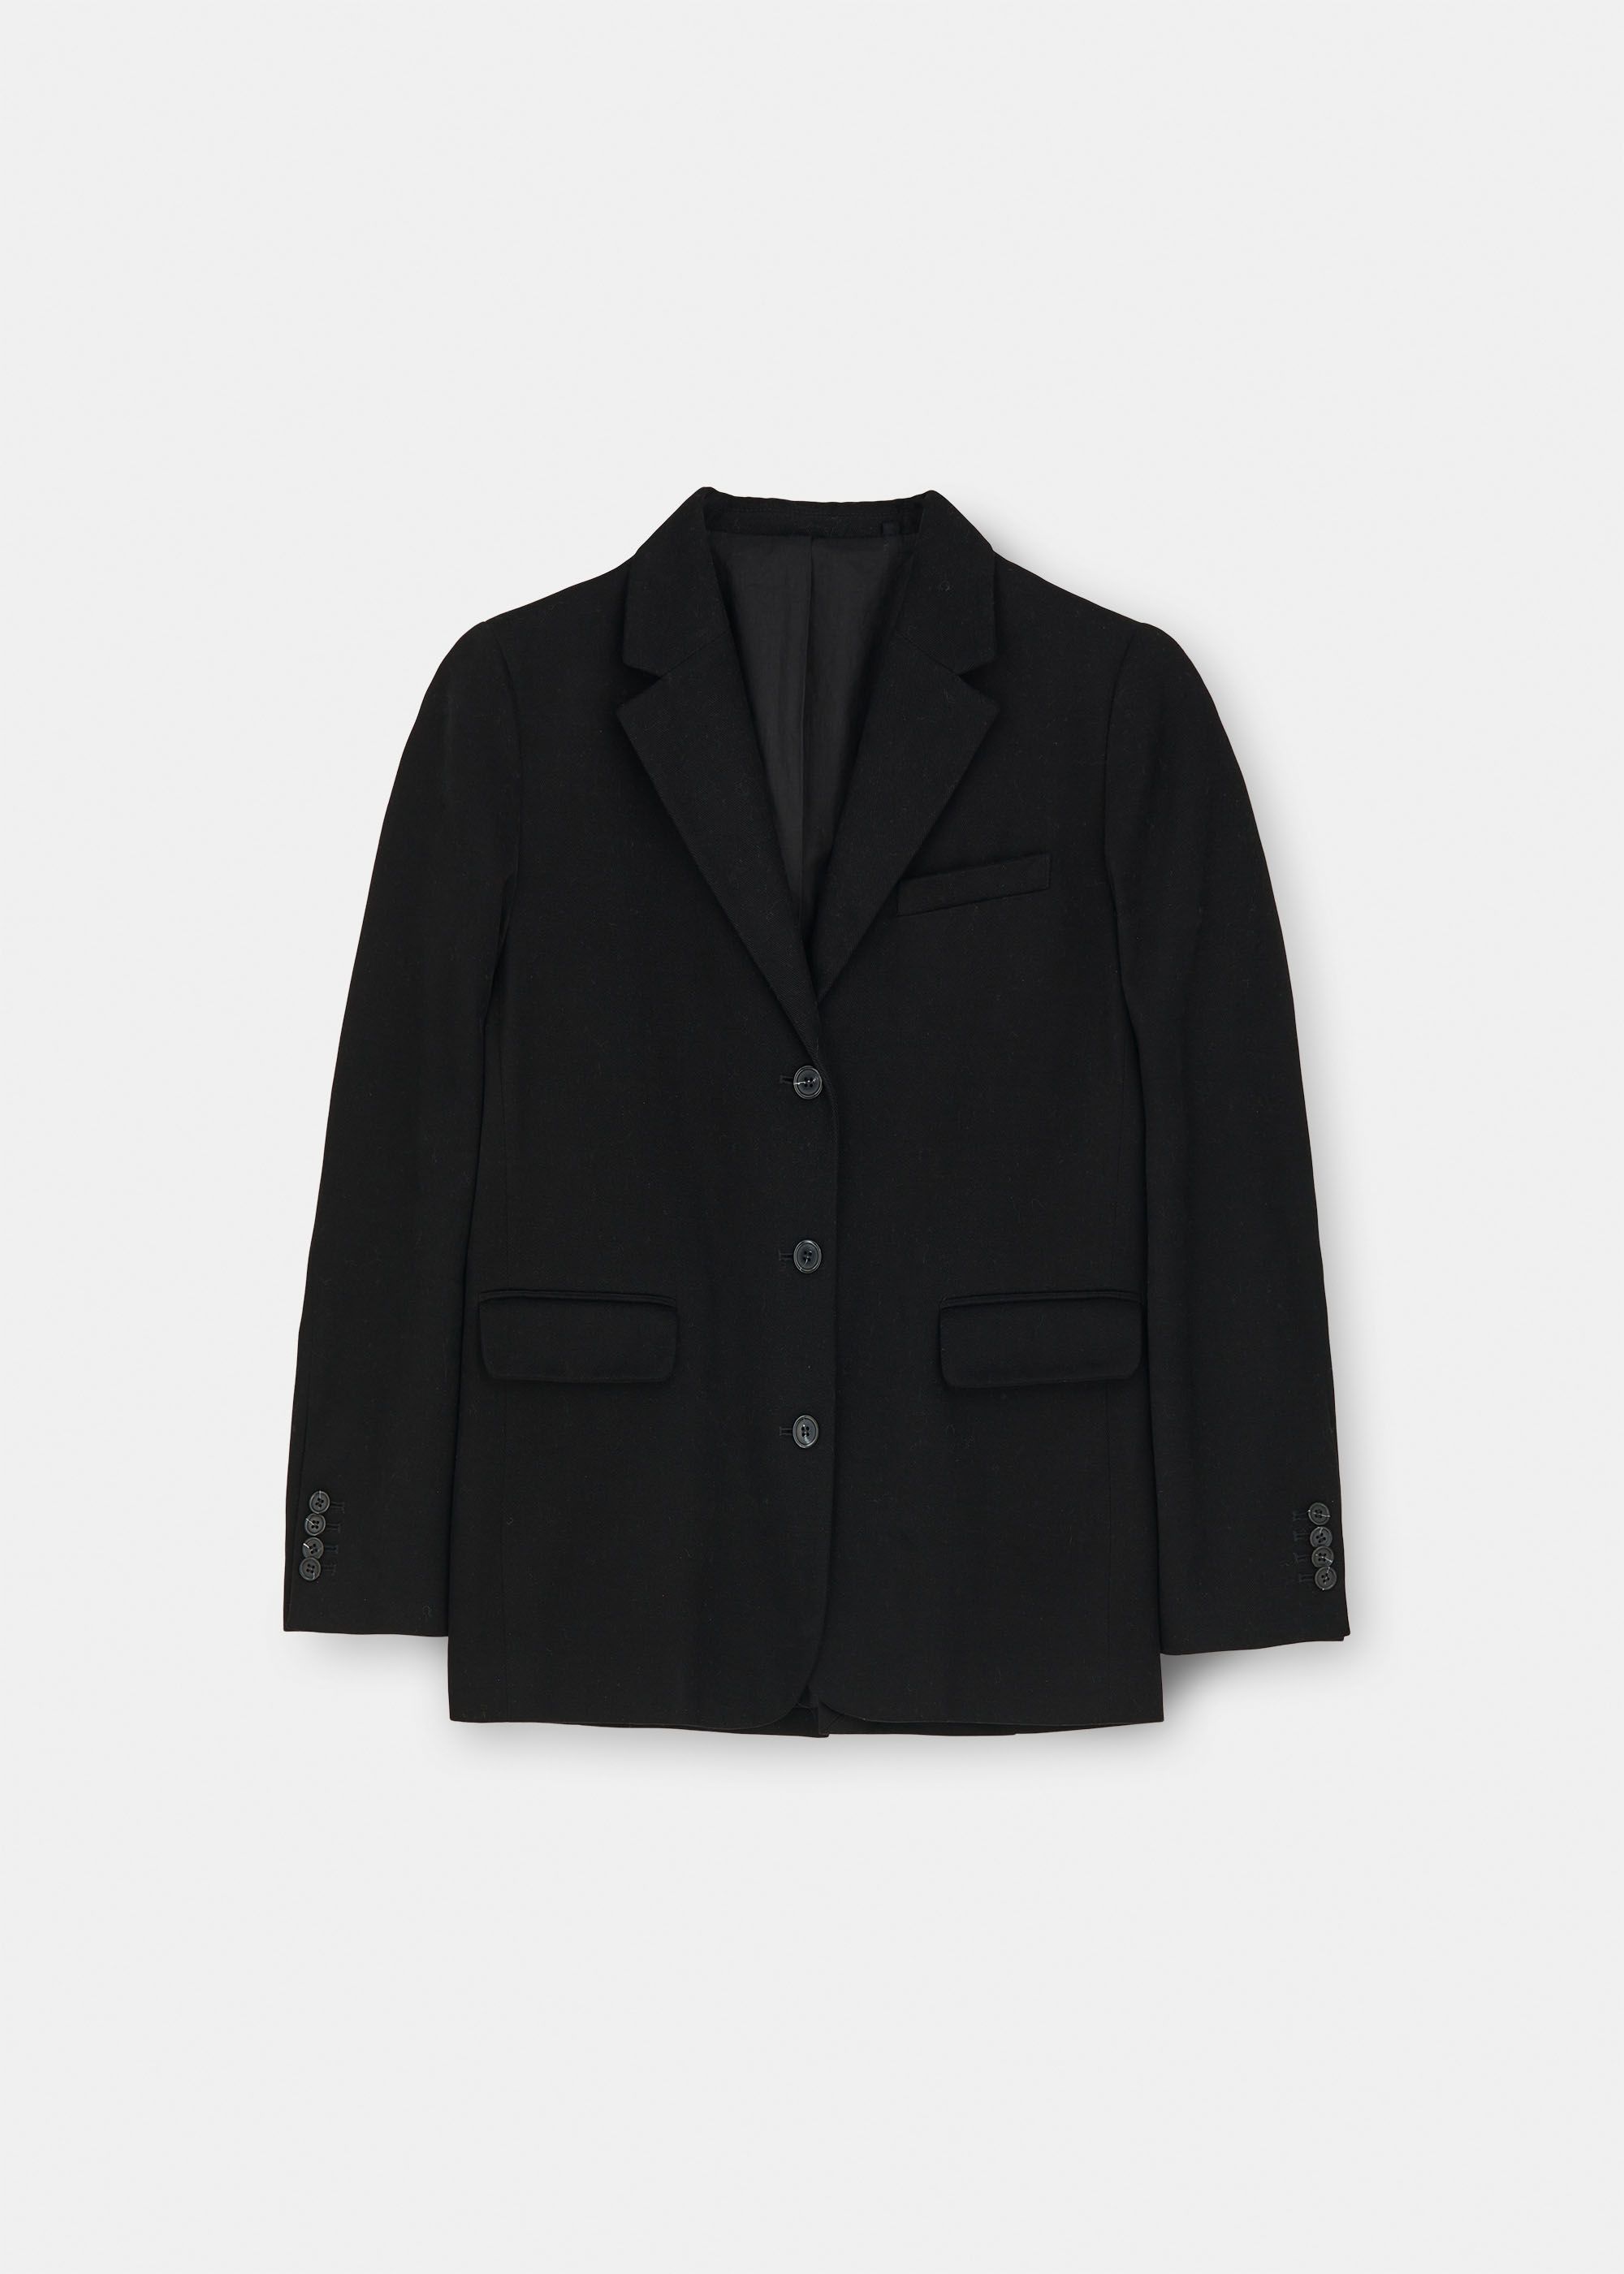 Outerwear - Mason jacket tailored